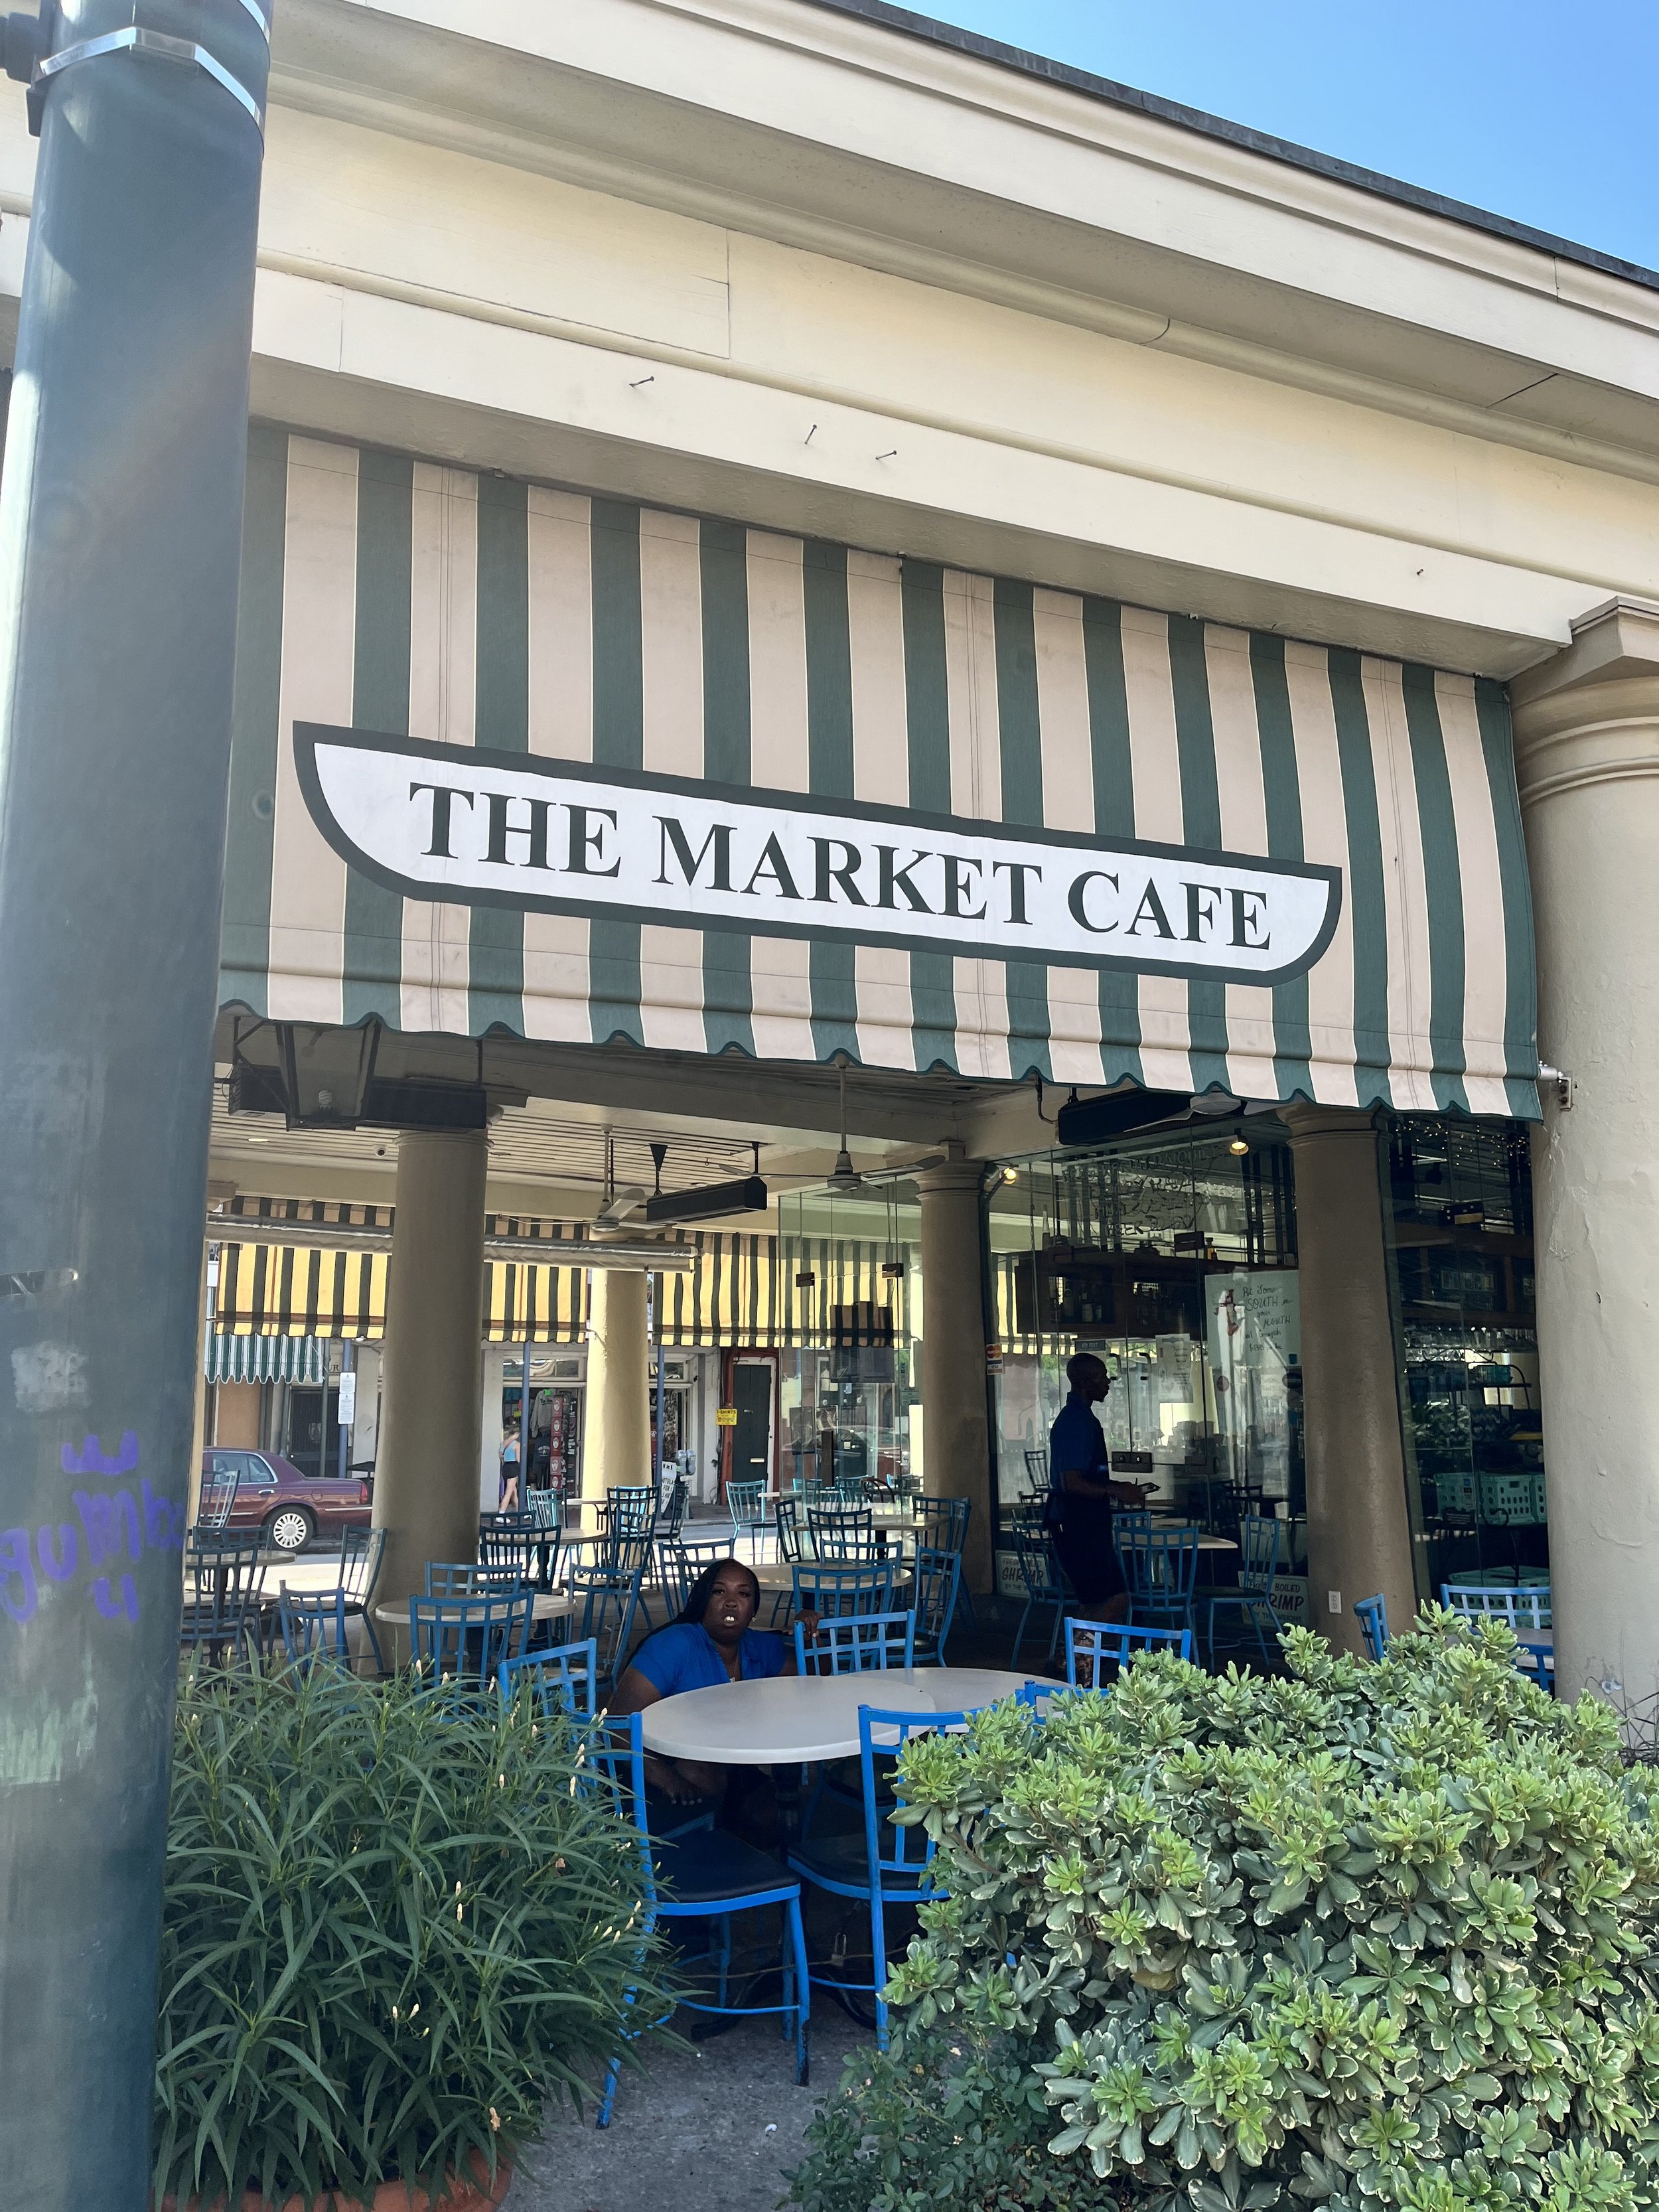 The Market Cafe sign New Orleans LA.jpg